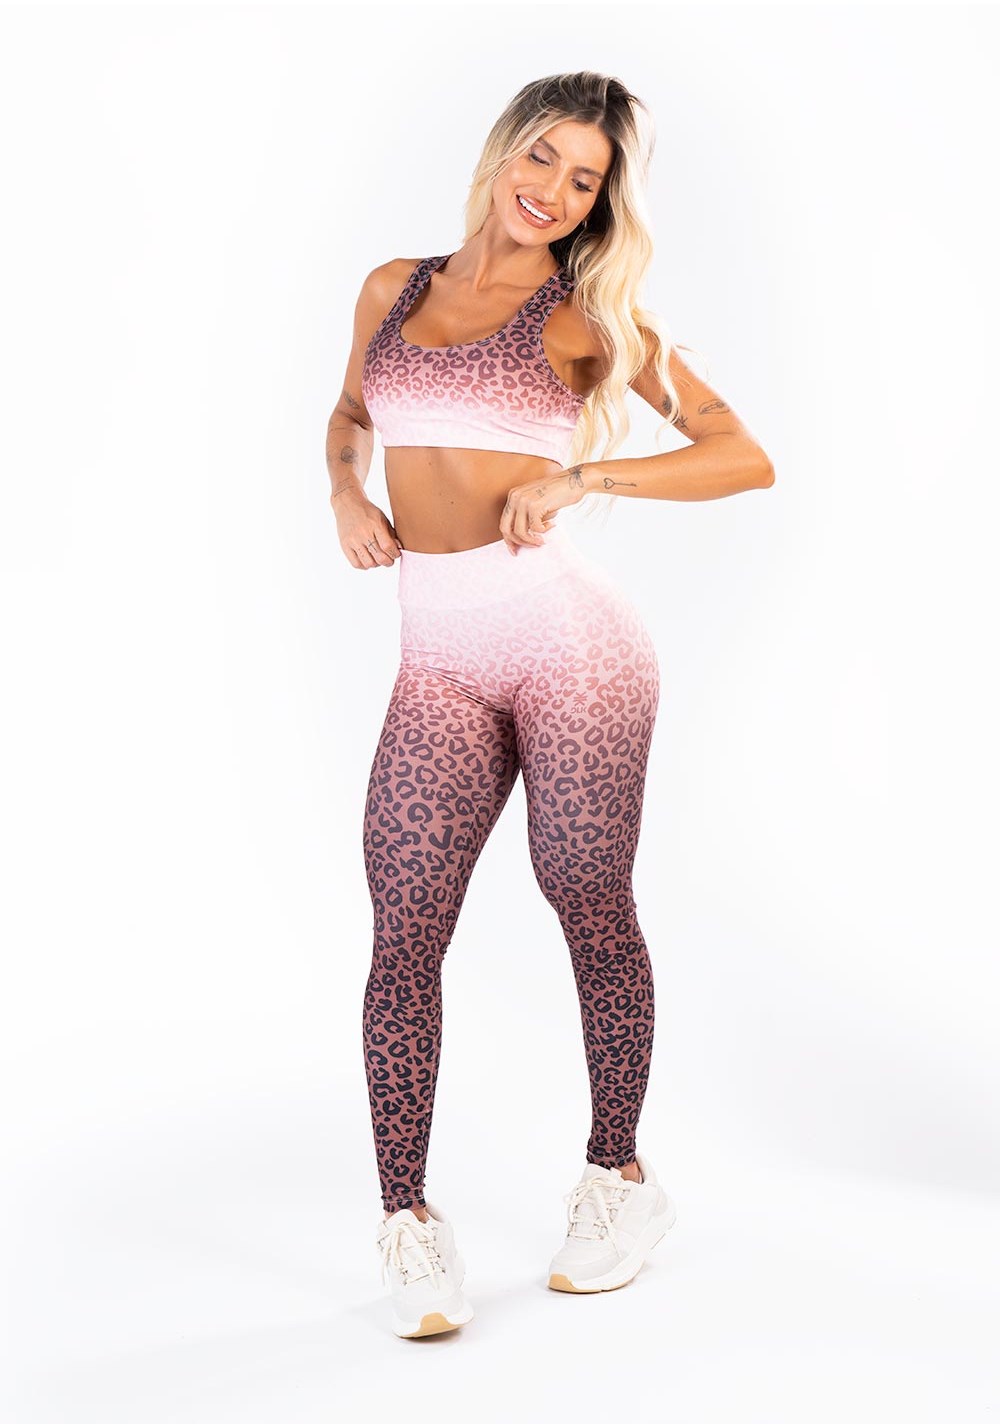 By Dy Fitness • Moda Fitness Para Mulheres que Malham com Estilo - Legging  Paola Detalhe Animal Print